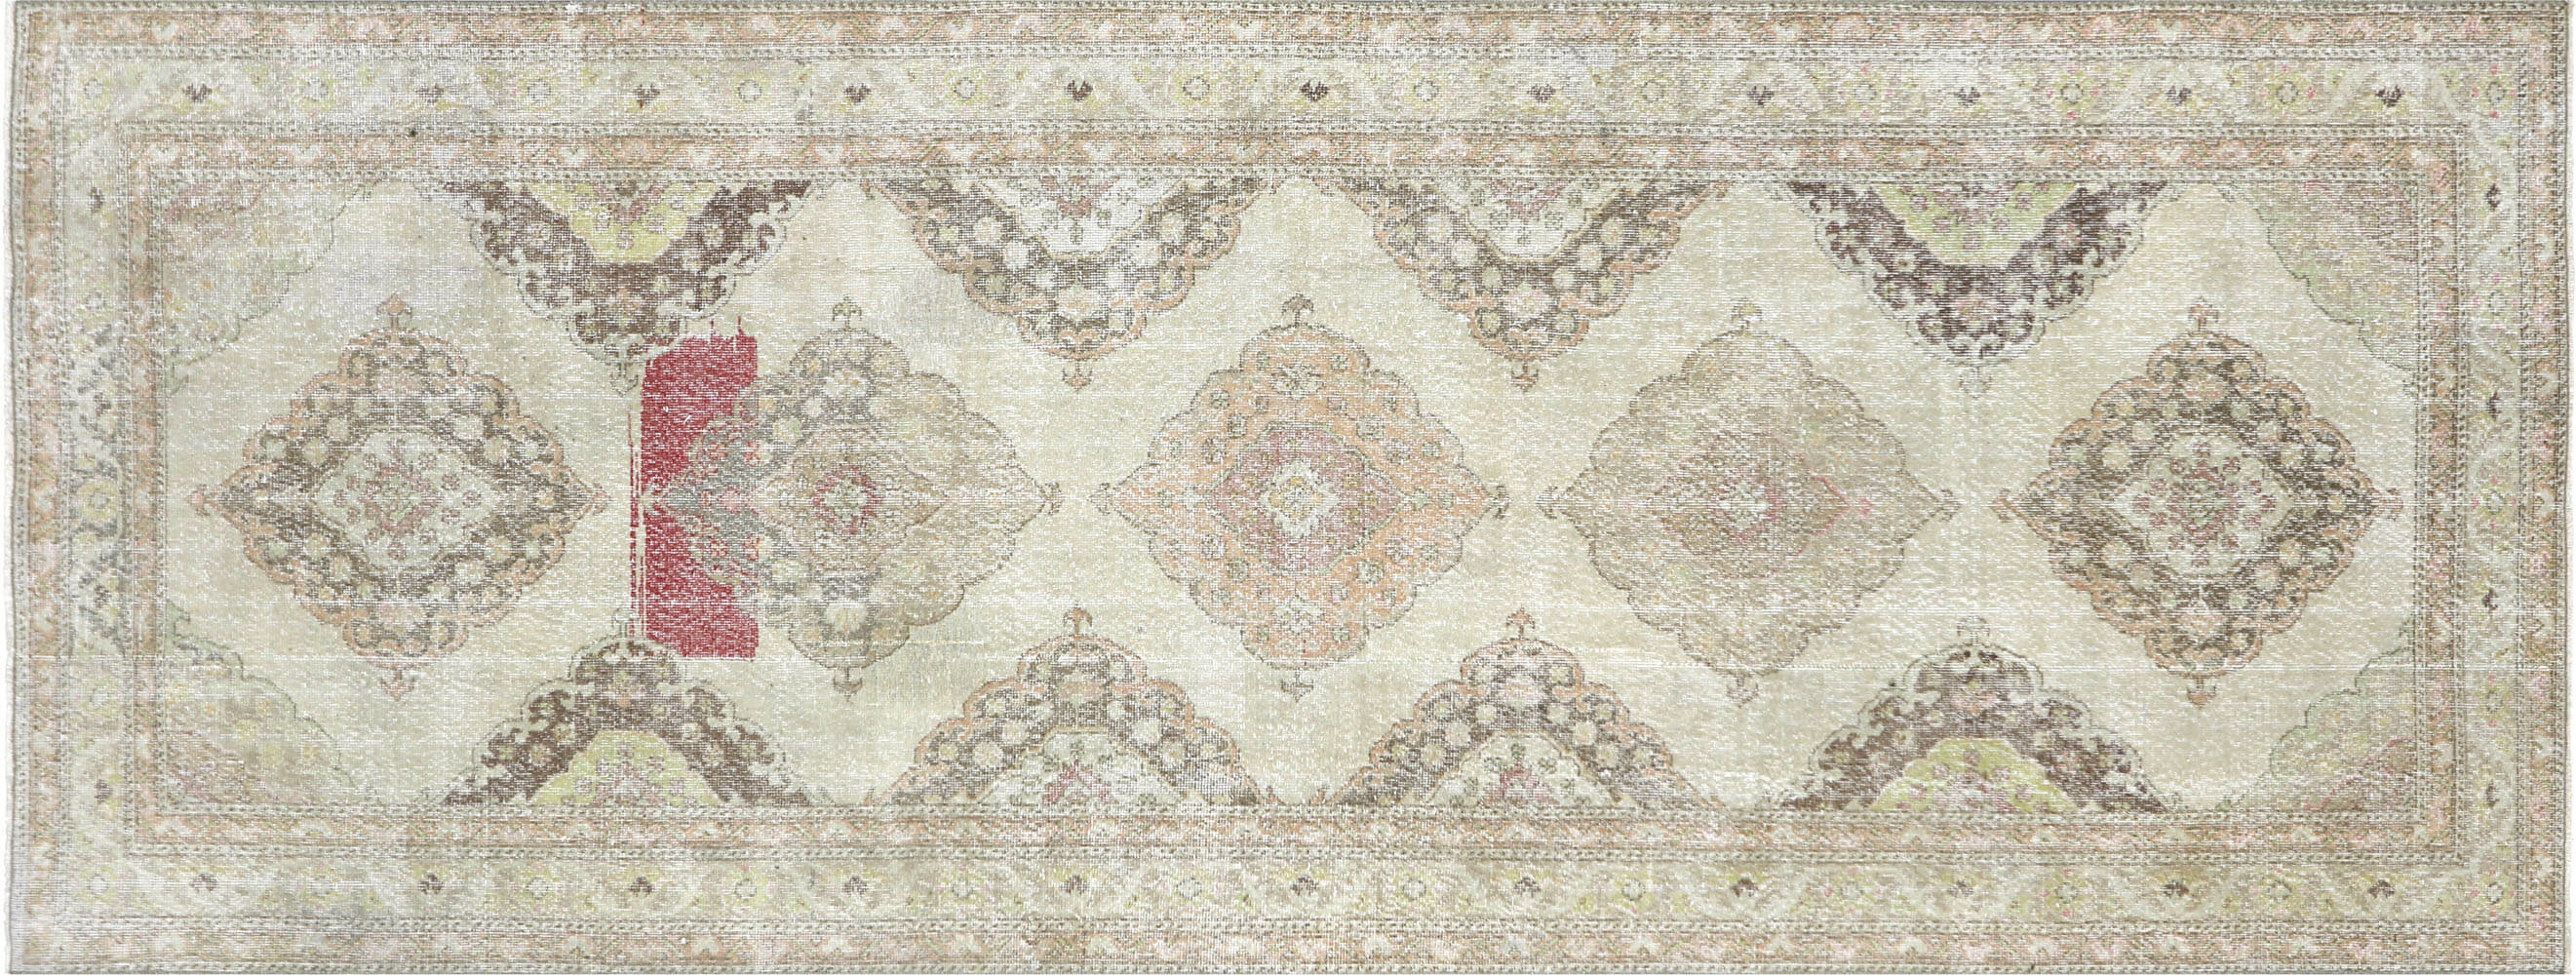 Vintage Turkish Oushak Carpet - 4'9" x 12'4"